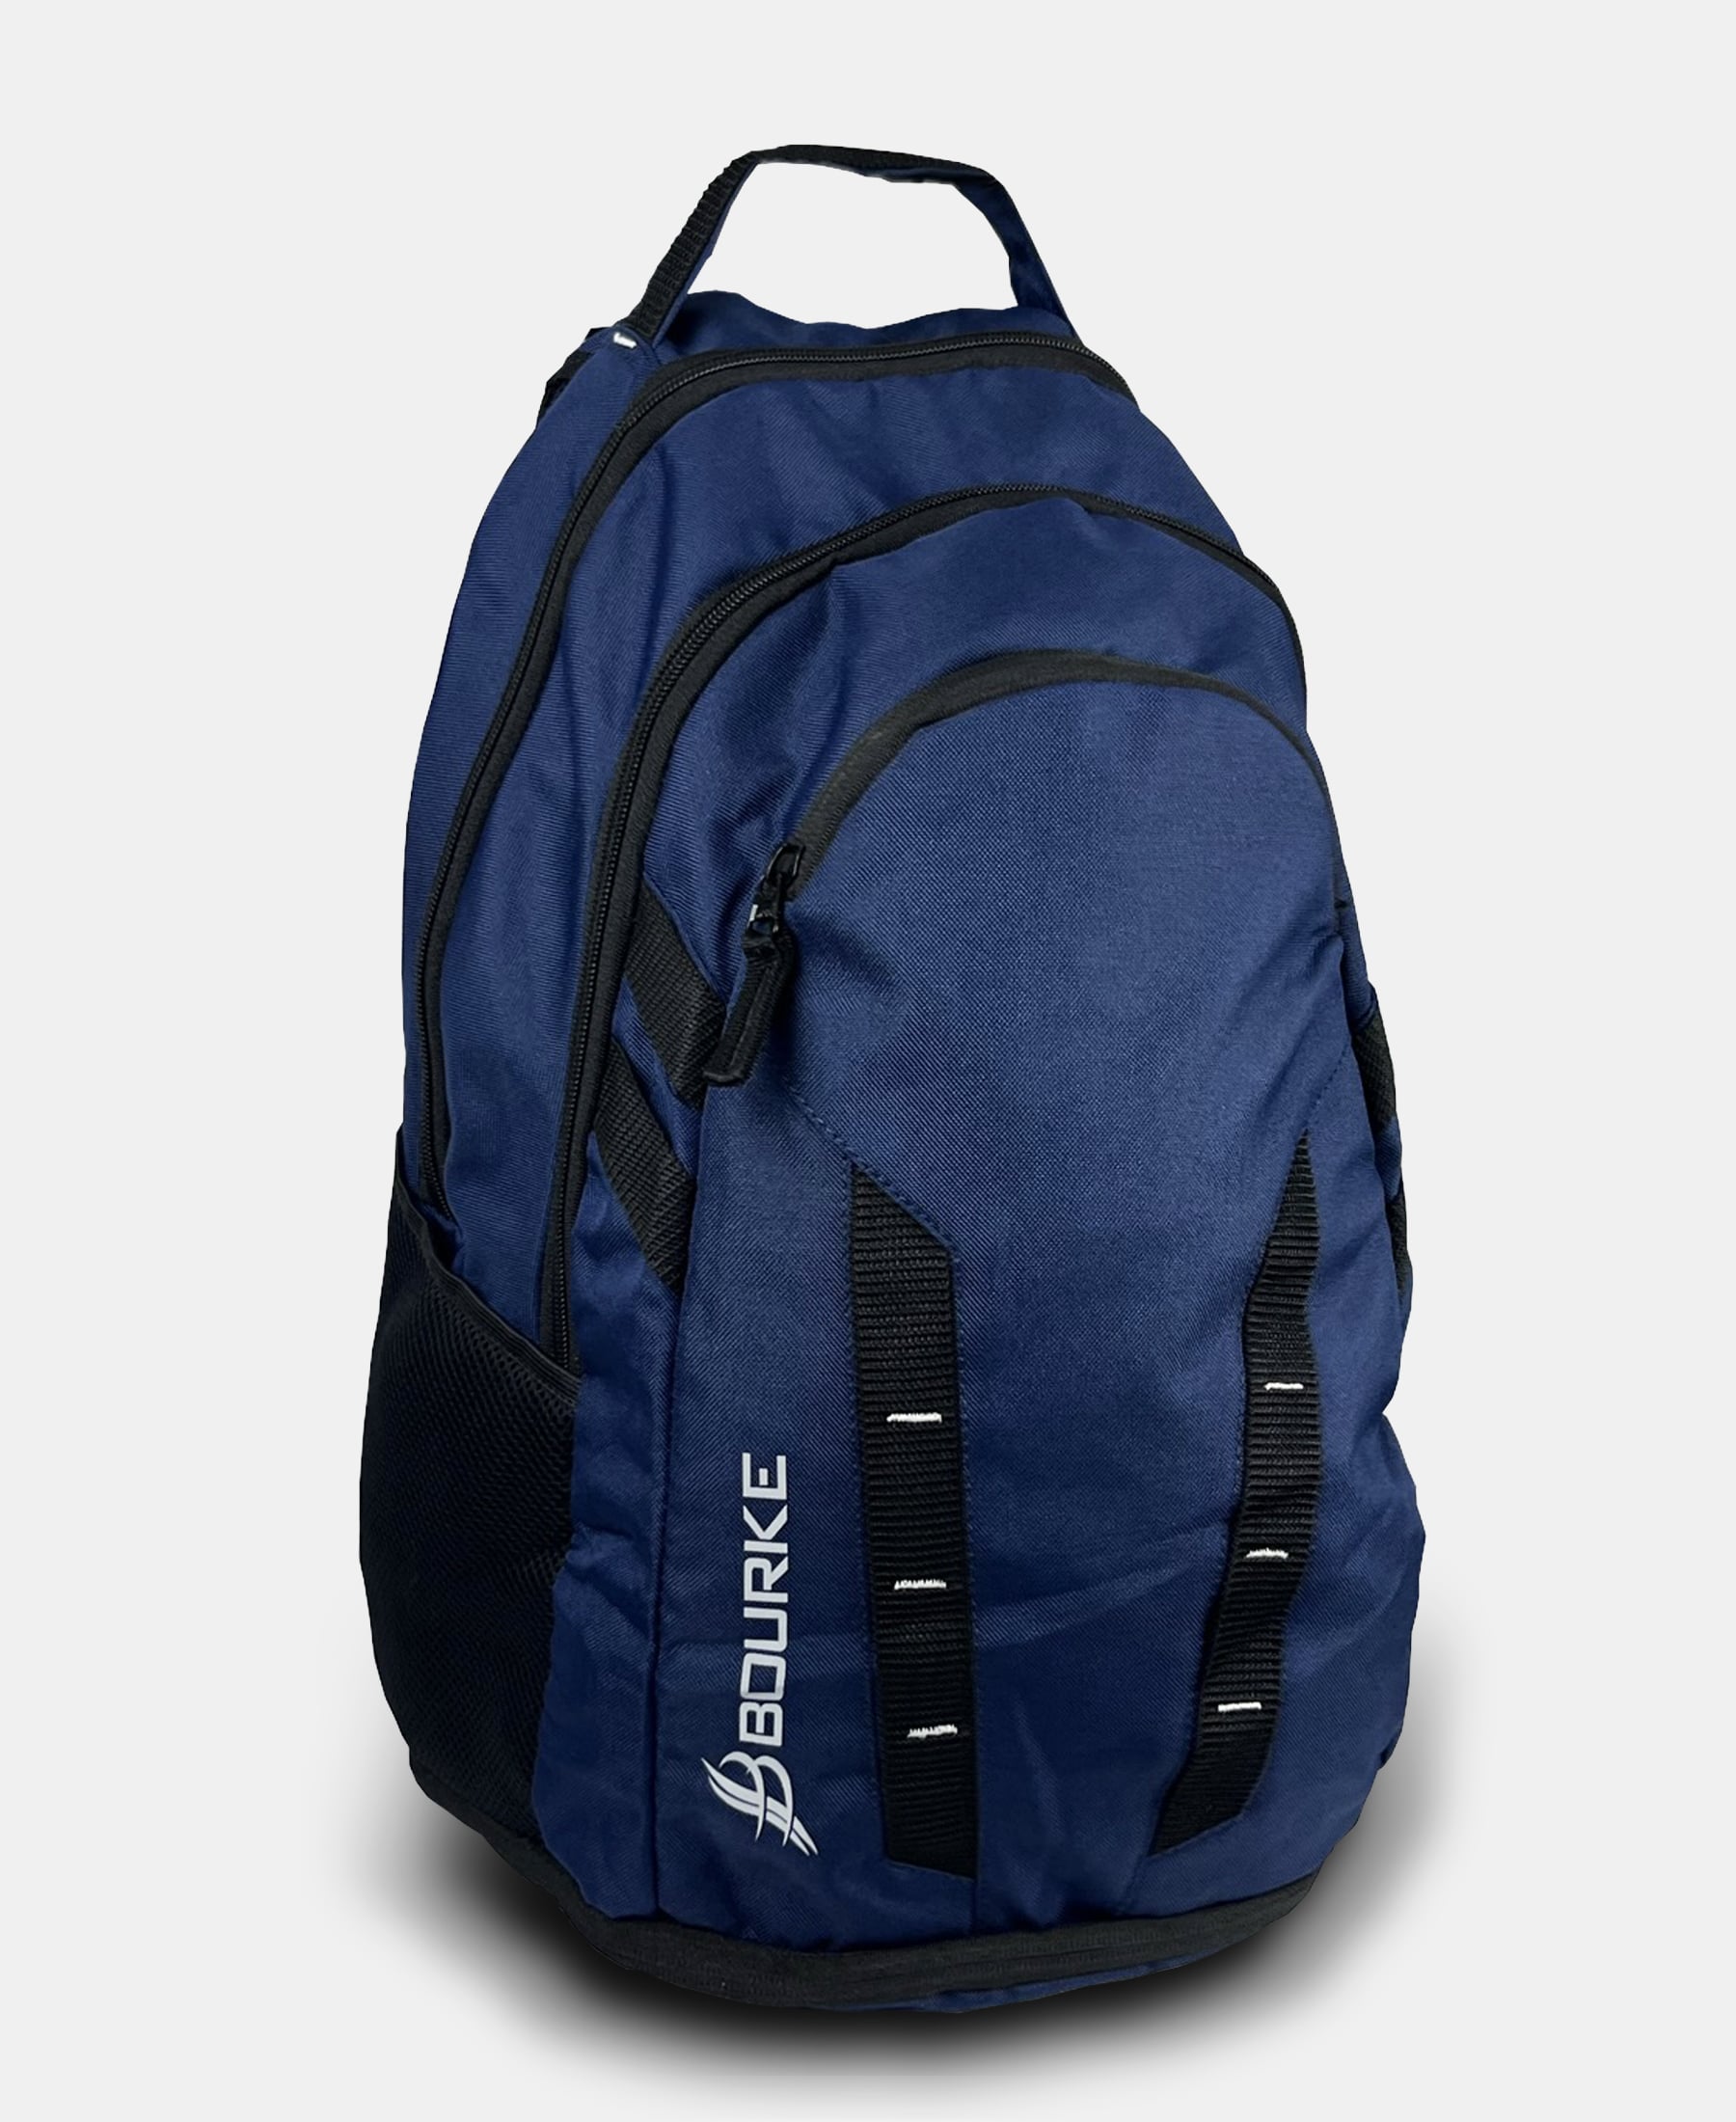 CROGA Backpack